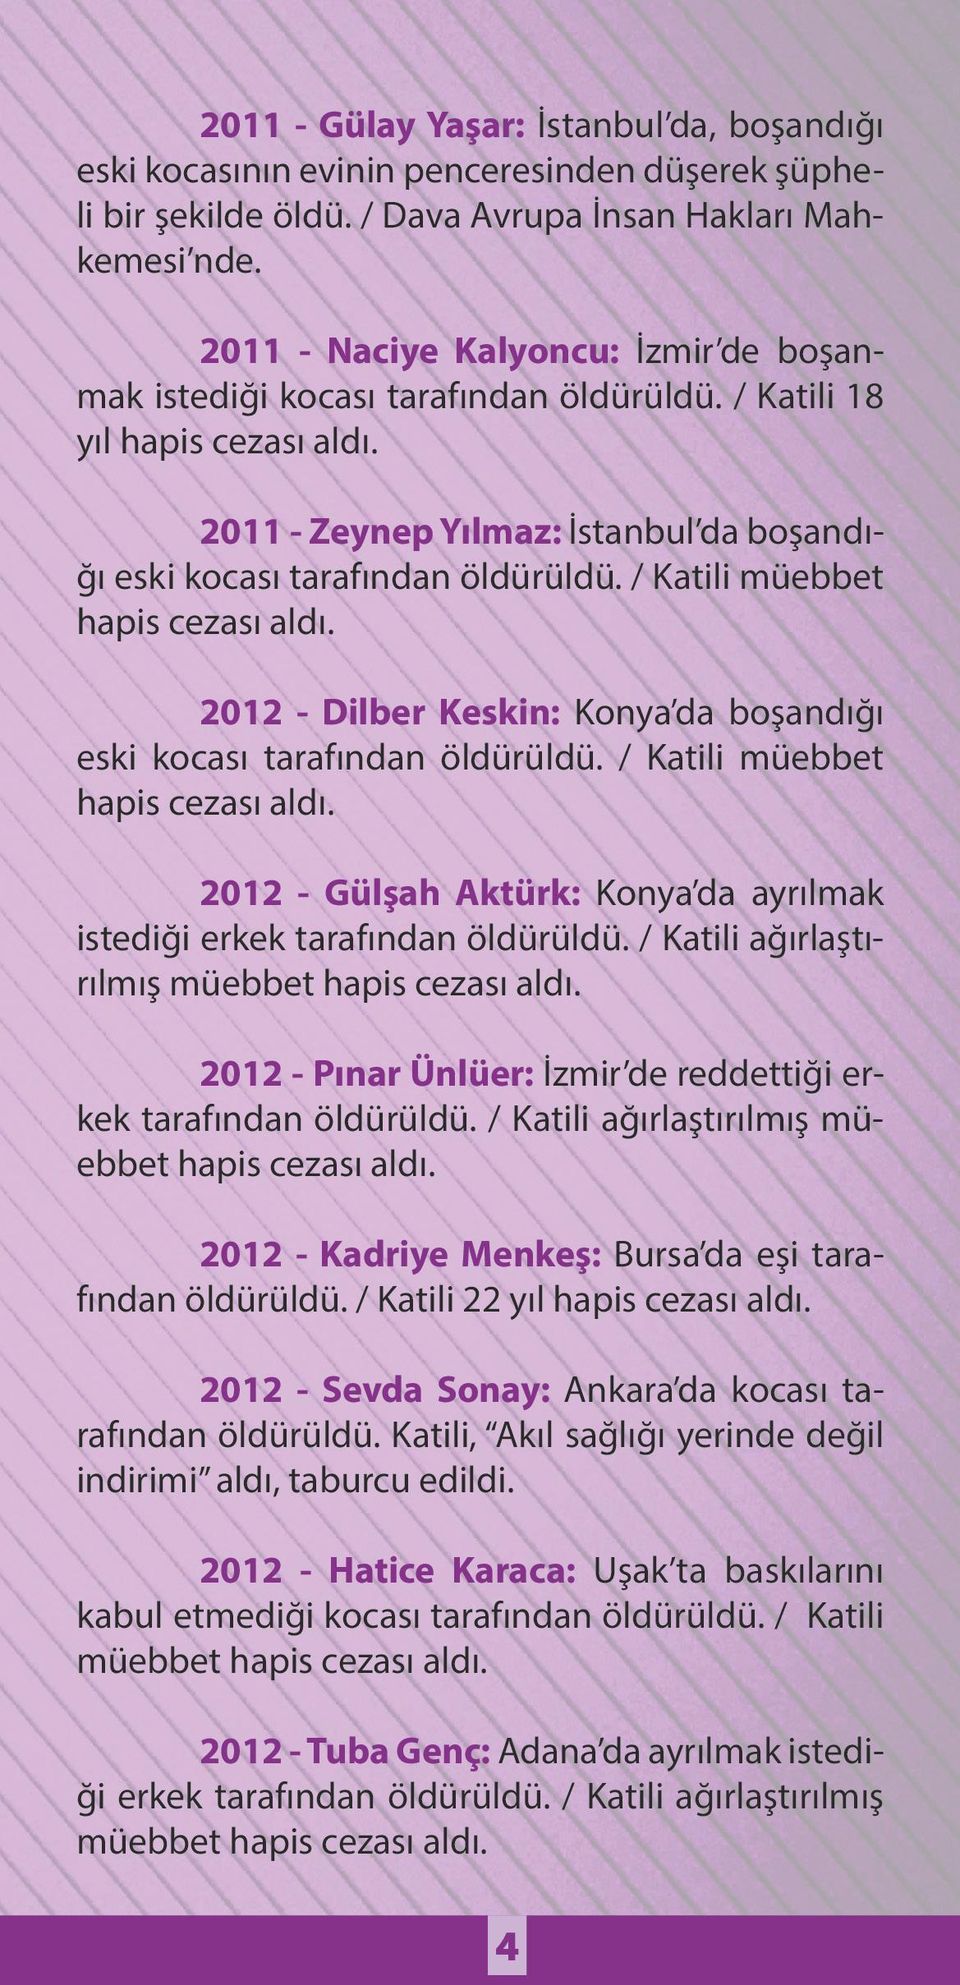 / Katili müebbet 2012 - Dilber Keskin: Konya da boşandığı eski kocası tarafından öldürüldü. / Katili müebbet 2012 - Gülşah Aktürk: Konya da ayrılmak istediği erkek tarafından öldürüldü.